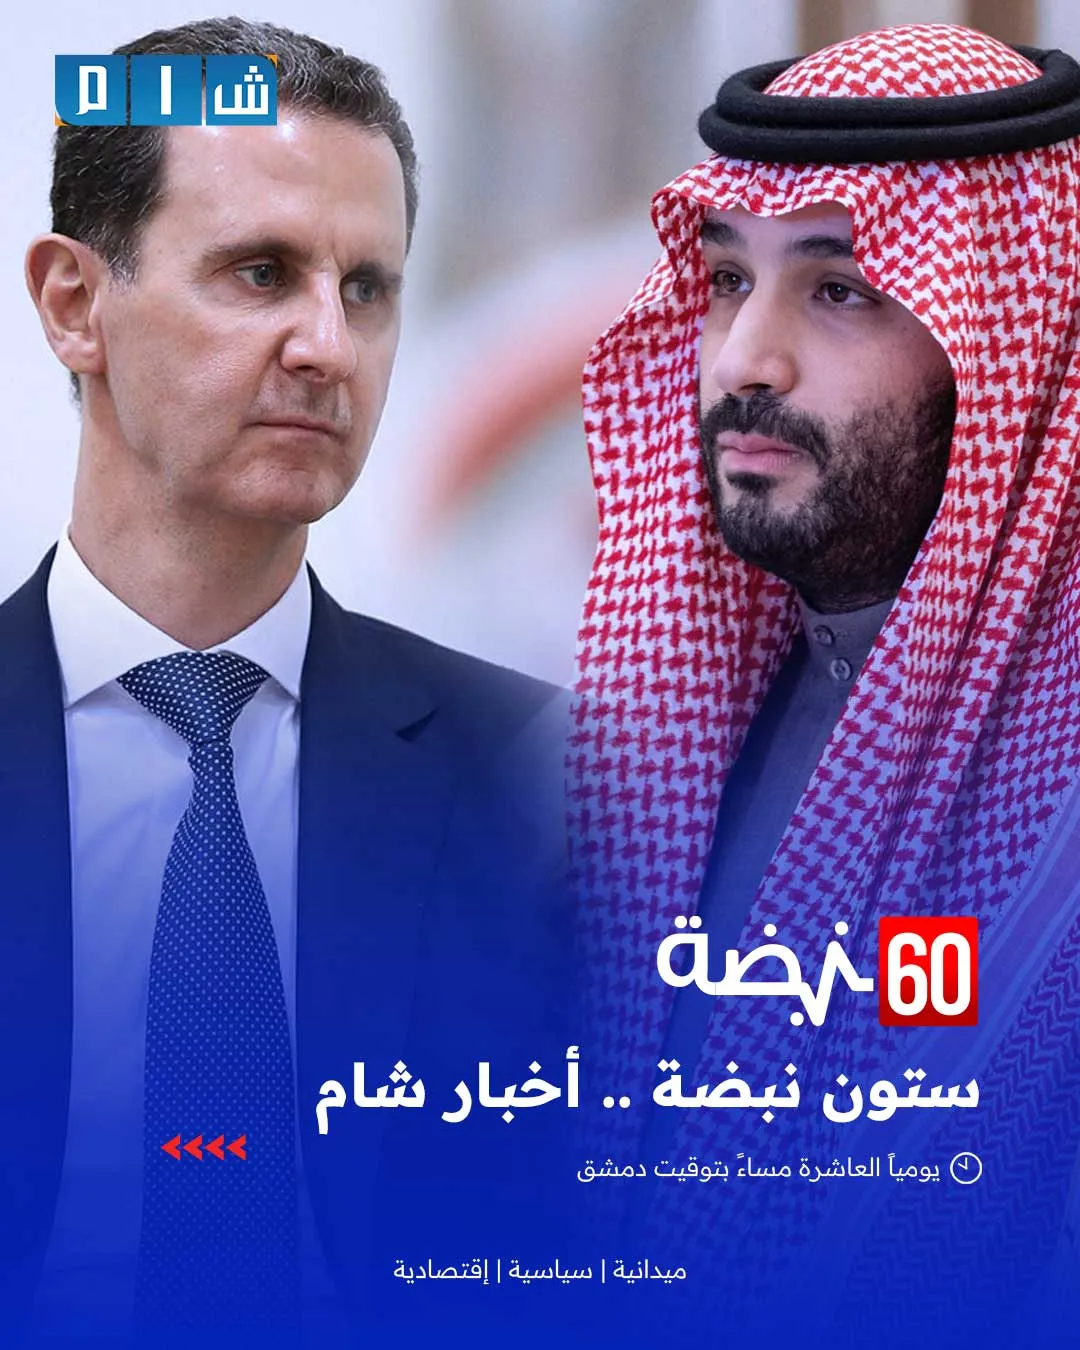 السعودية تخطي أولى خطواتها للتطبيع مع نظام الأسد المجرم